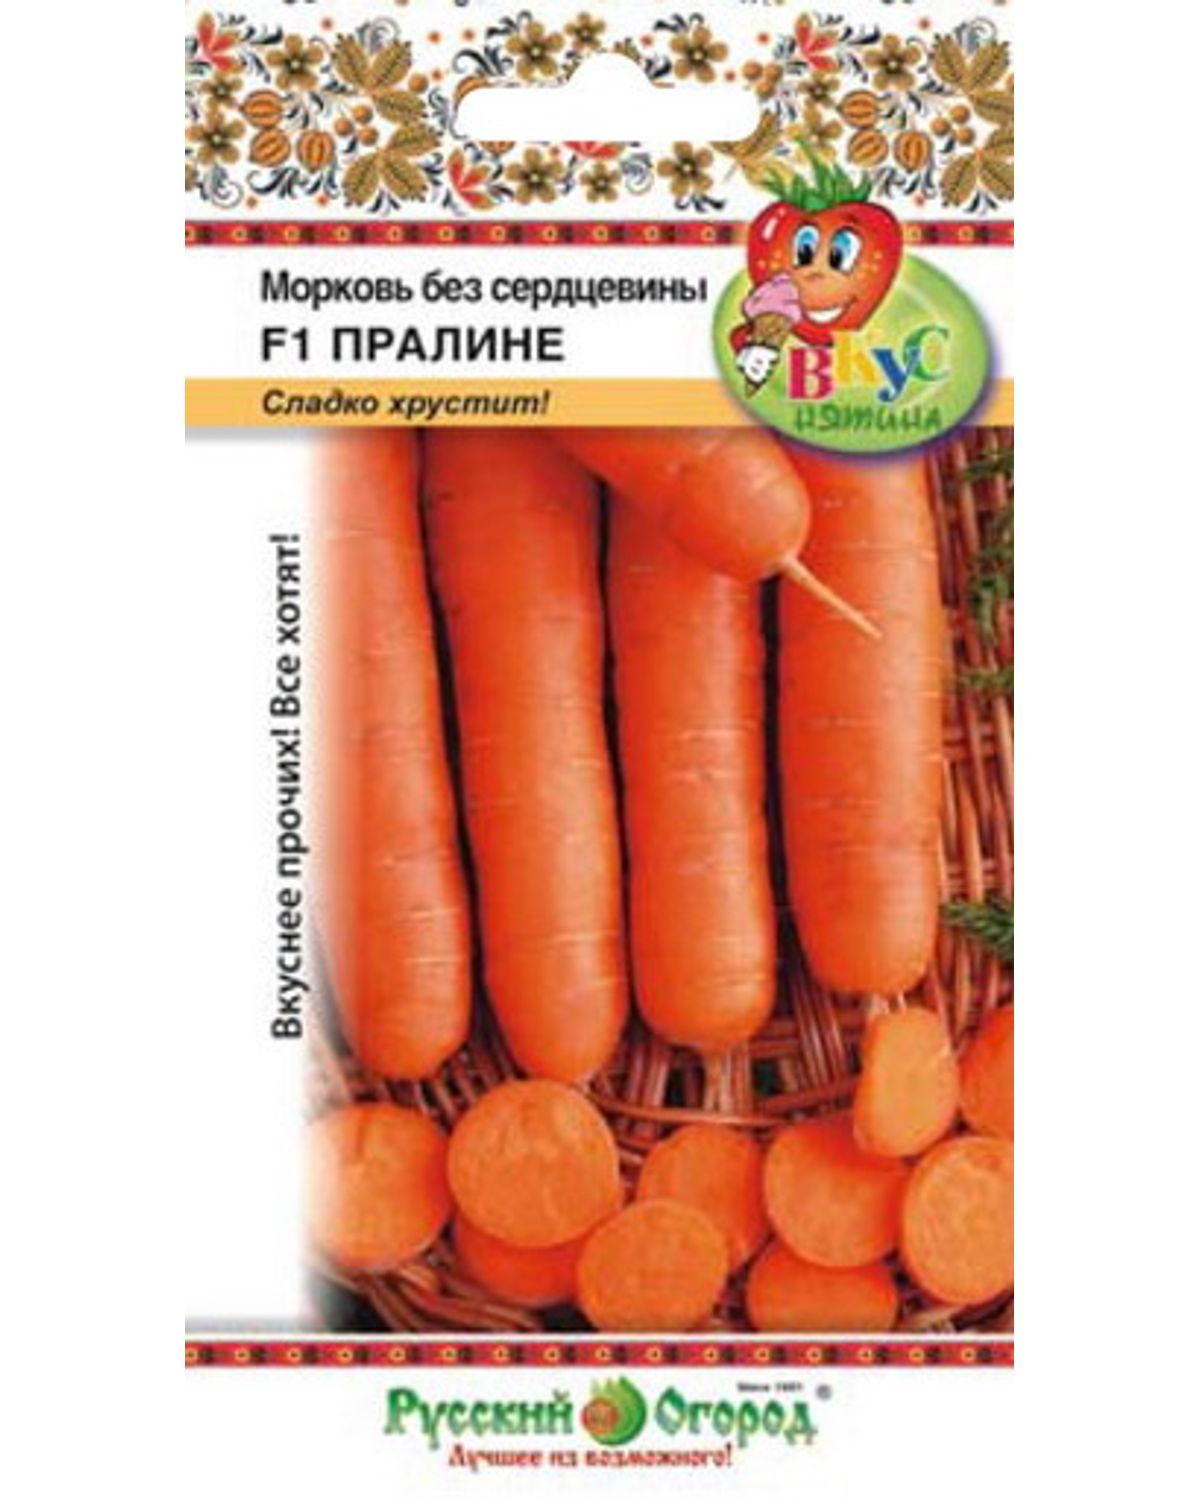 

Семена овощей Русский огород 303024 Морковь без сердцевины Пралине 400 шт.